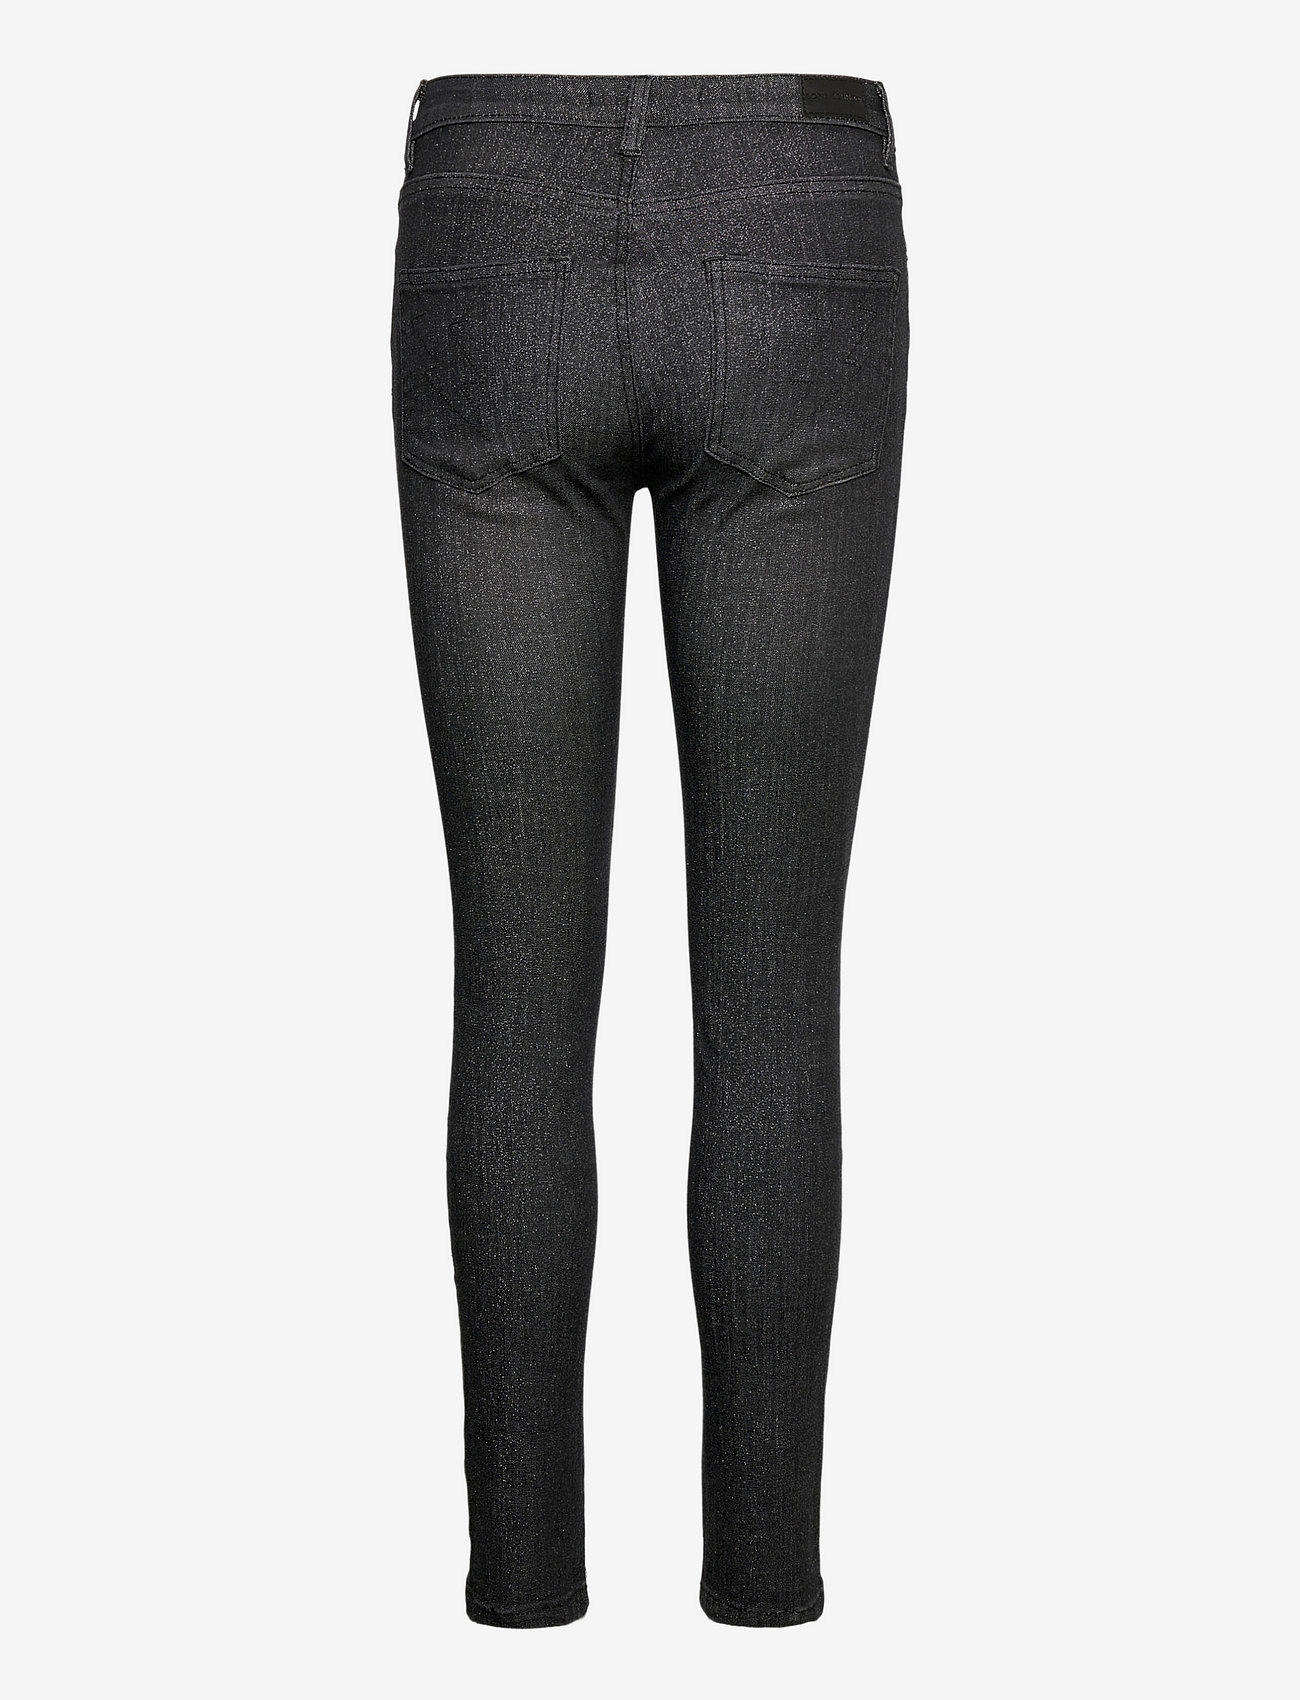 Sofie Schnoor - Jeans - dżinsy skinny fit - black - 1